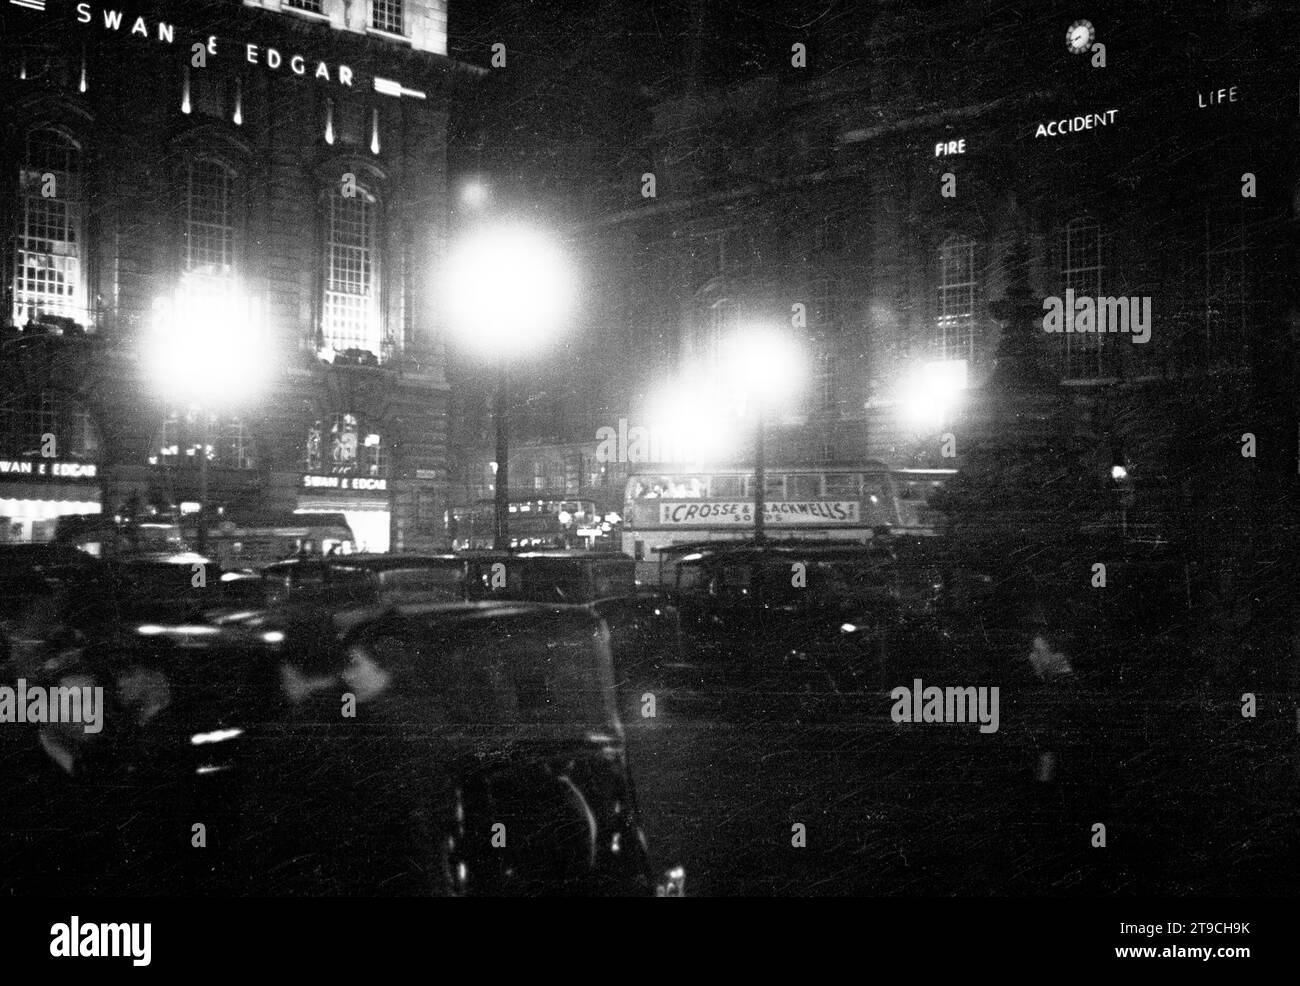 Años 1940, congestión histórica, nocturna y de tráfico pesado en el cruce de carretera Piccadilly Circus en esta época. Se puede ver el famoso almacén de Swan & Edgar, un edificio que ocupaba toda la esquina de Piccadilly y Regent Street. Foto de stock